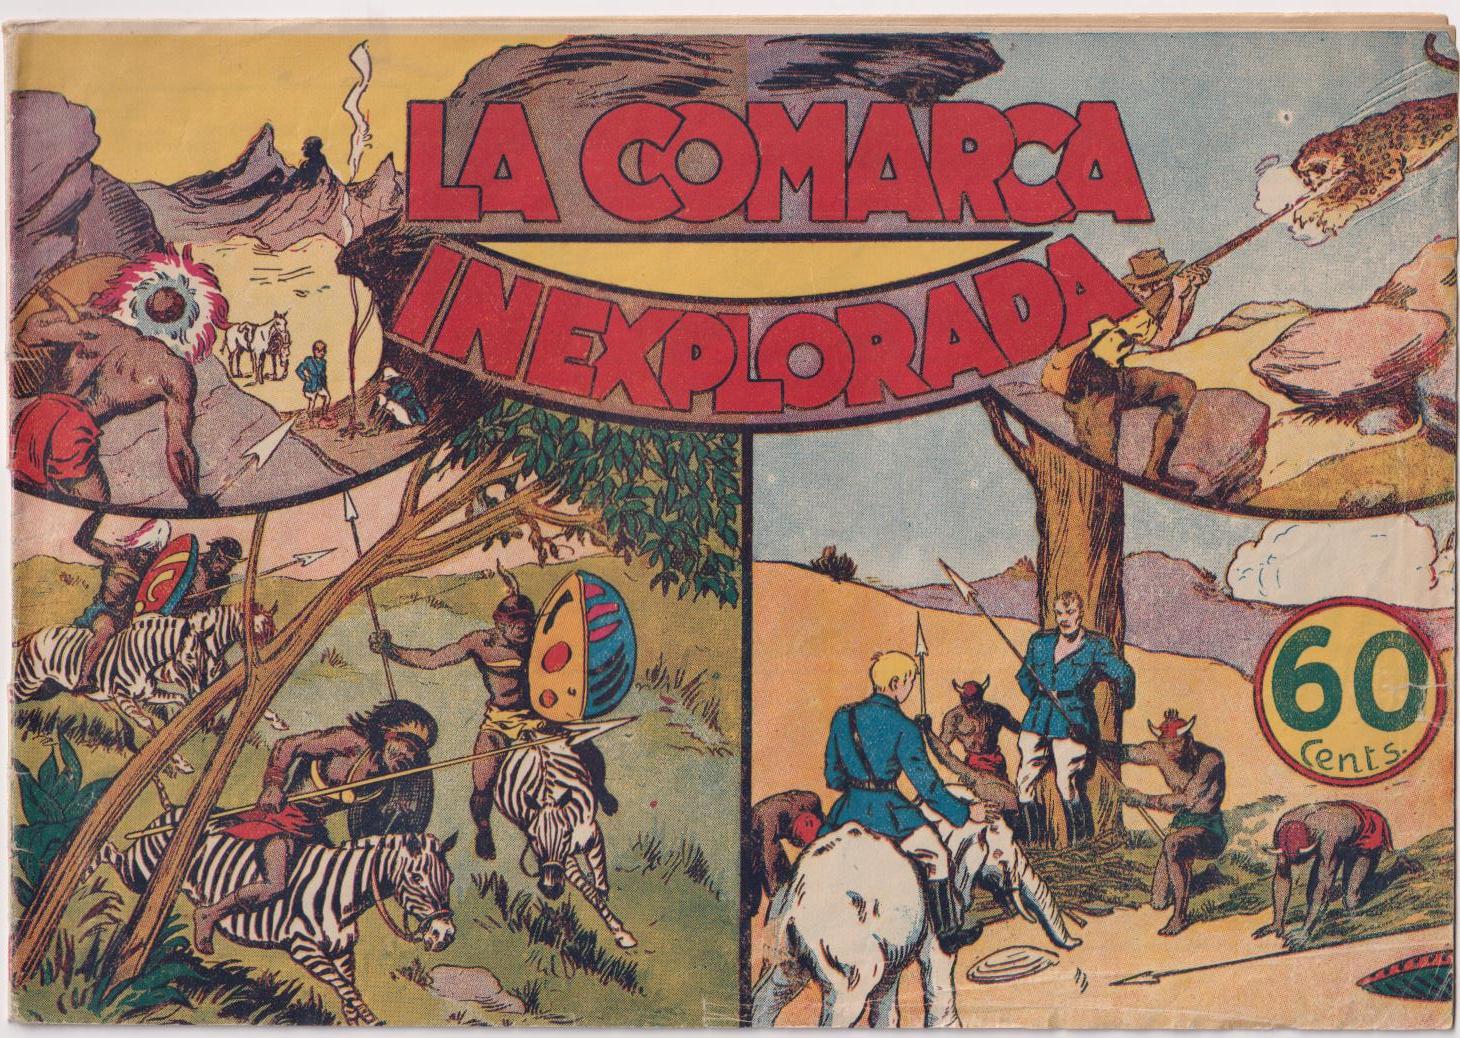 Jorge y Fernando nº 21. La comarca inexplorada. Hispano Americana 1940. Cromos contraportada